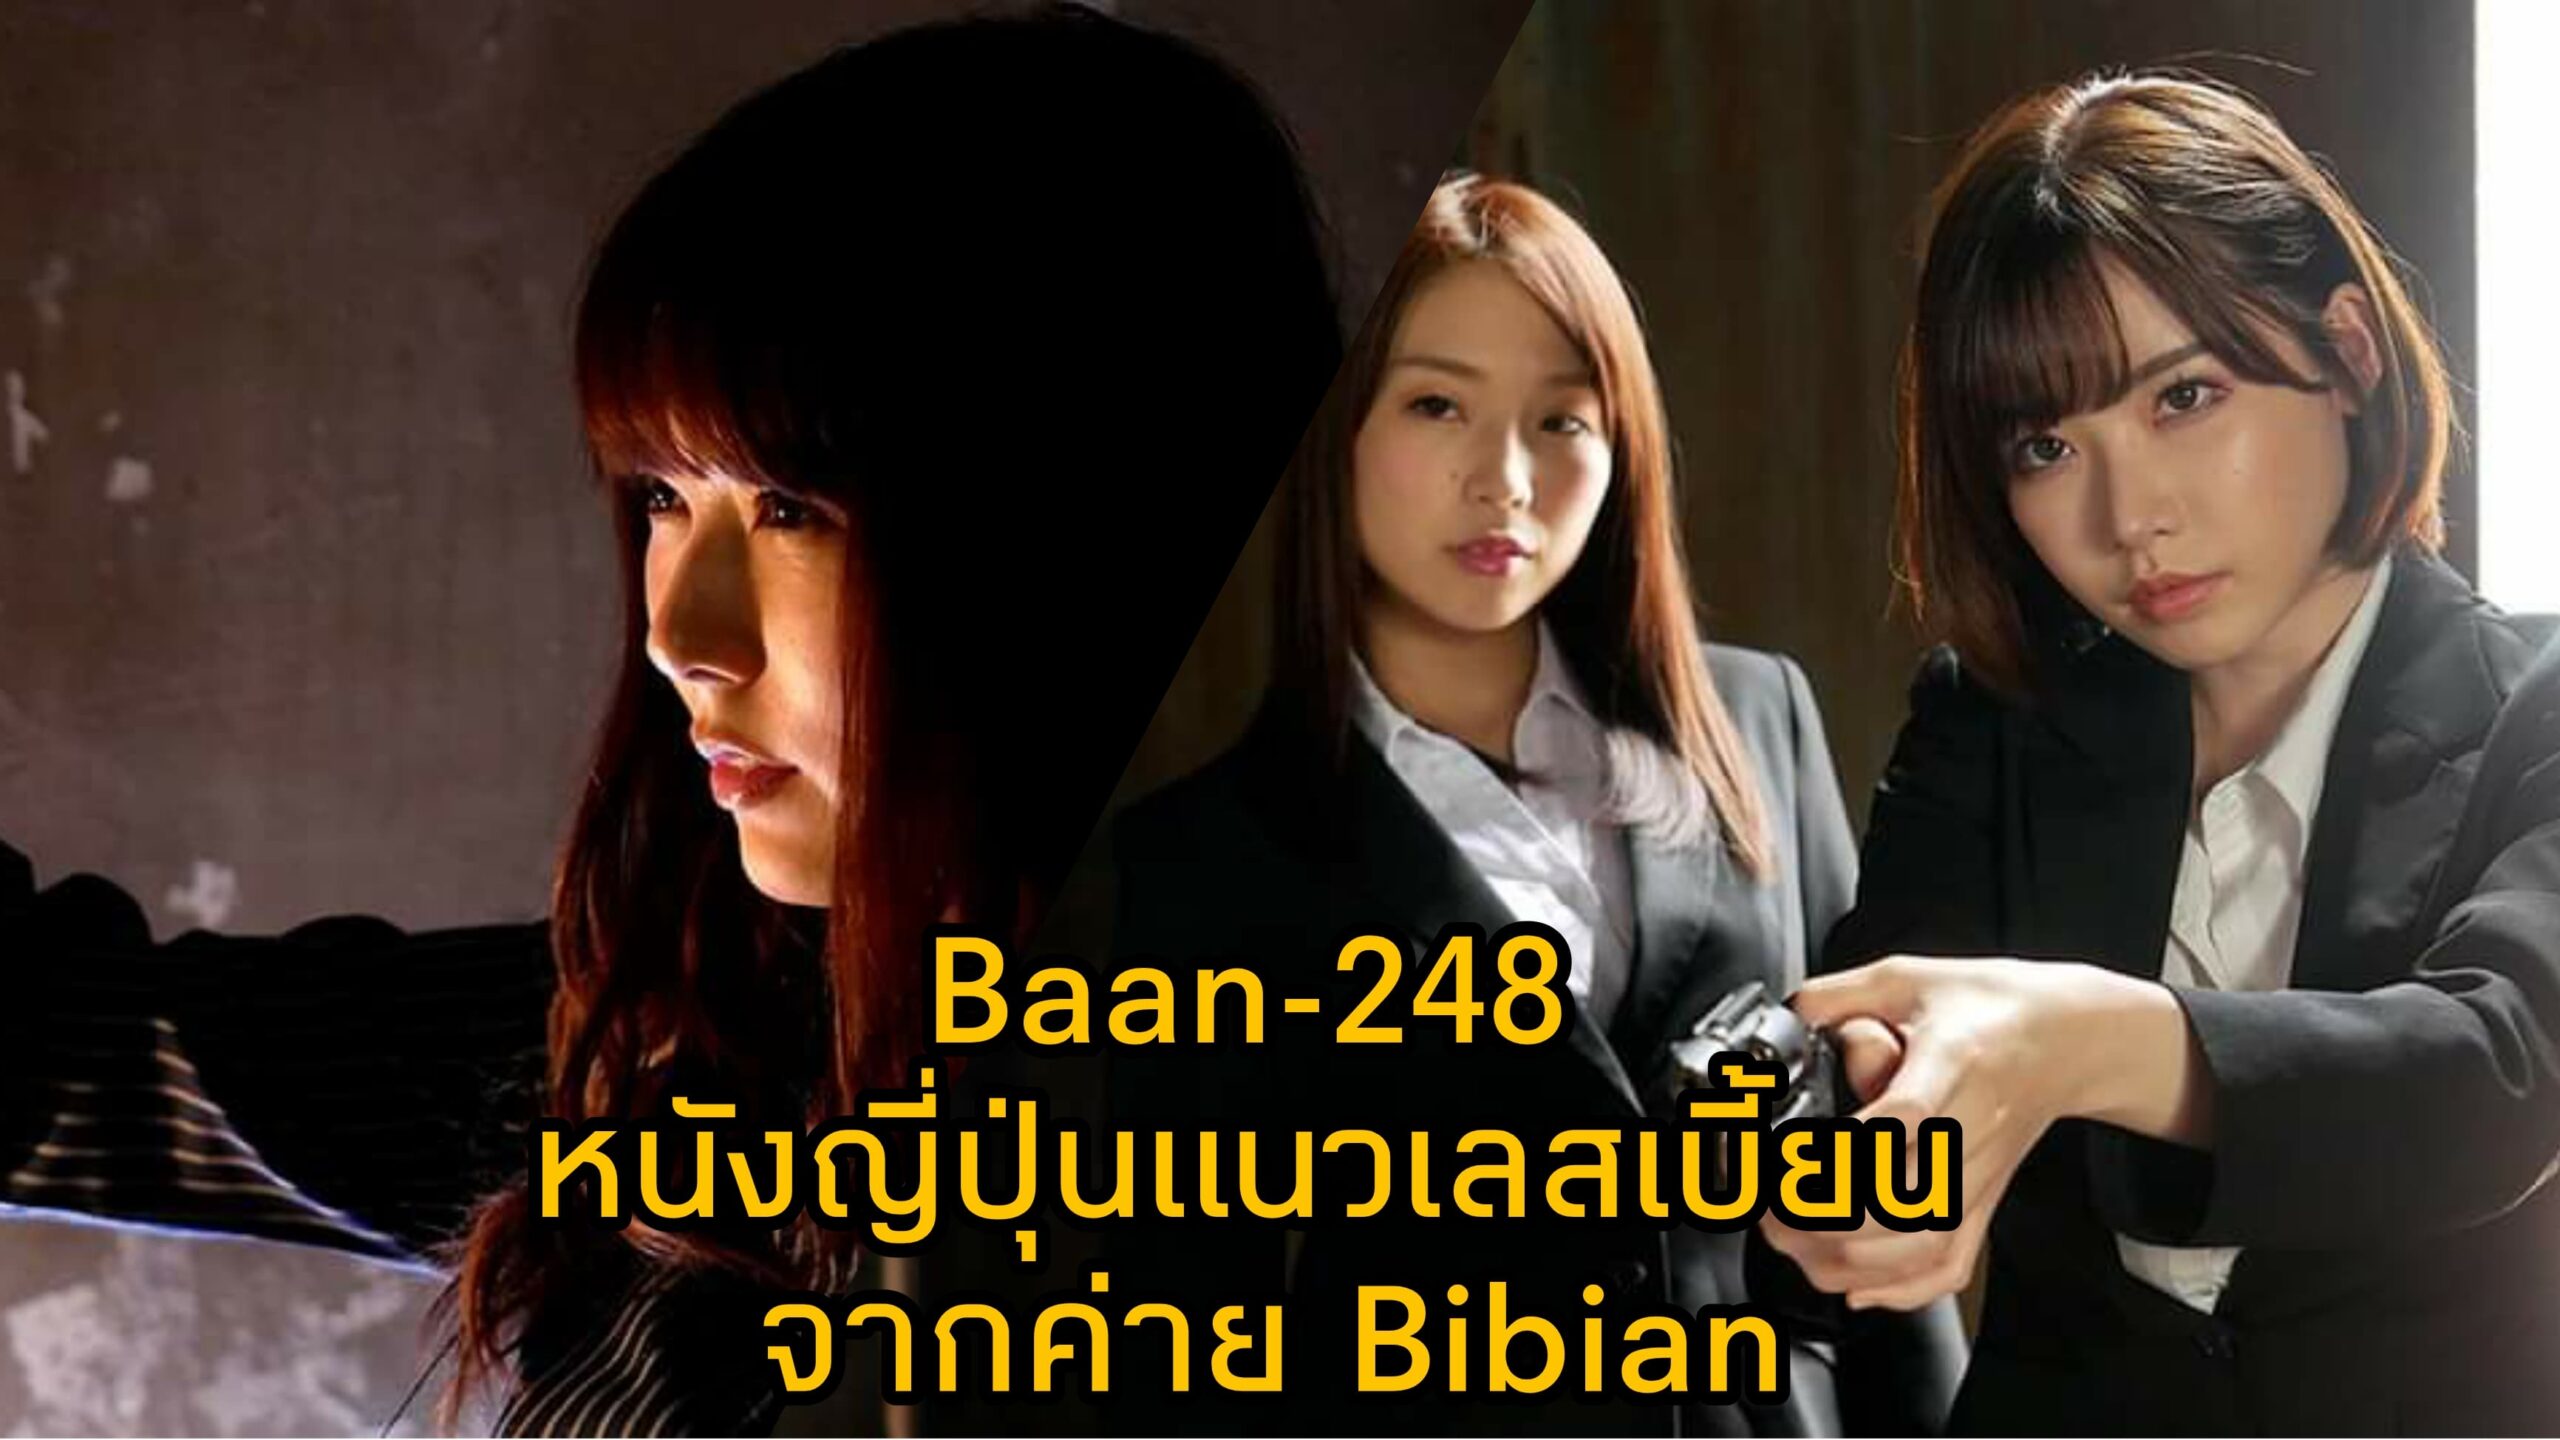 Bann-248 หนัง JAV แนวเลสเบี้ยน นำแสดงโดย 3 ตัวแม่แห่งวงการเอวี Eimi Fukada 11